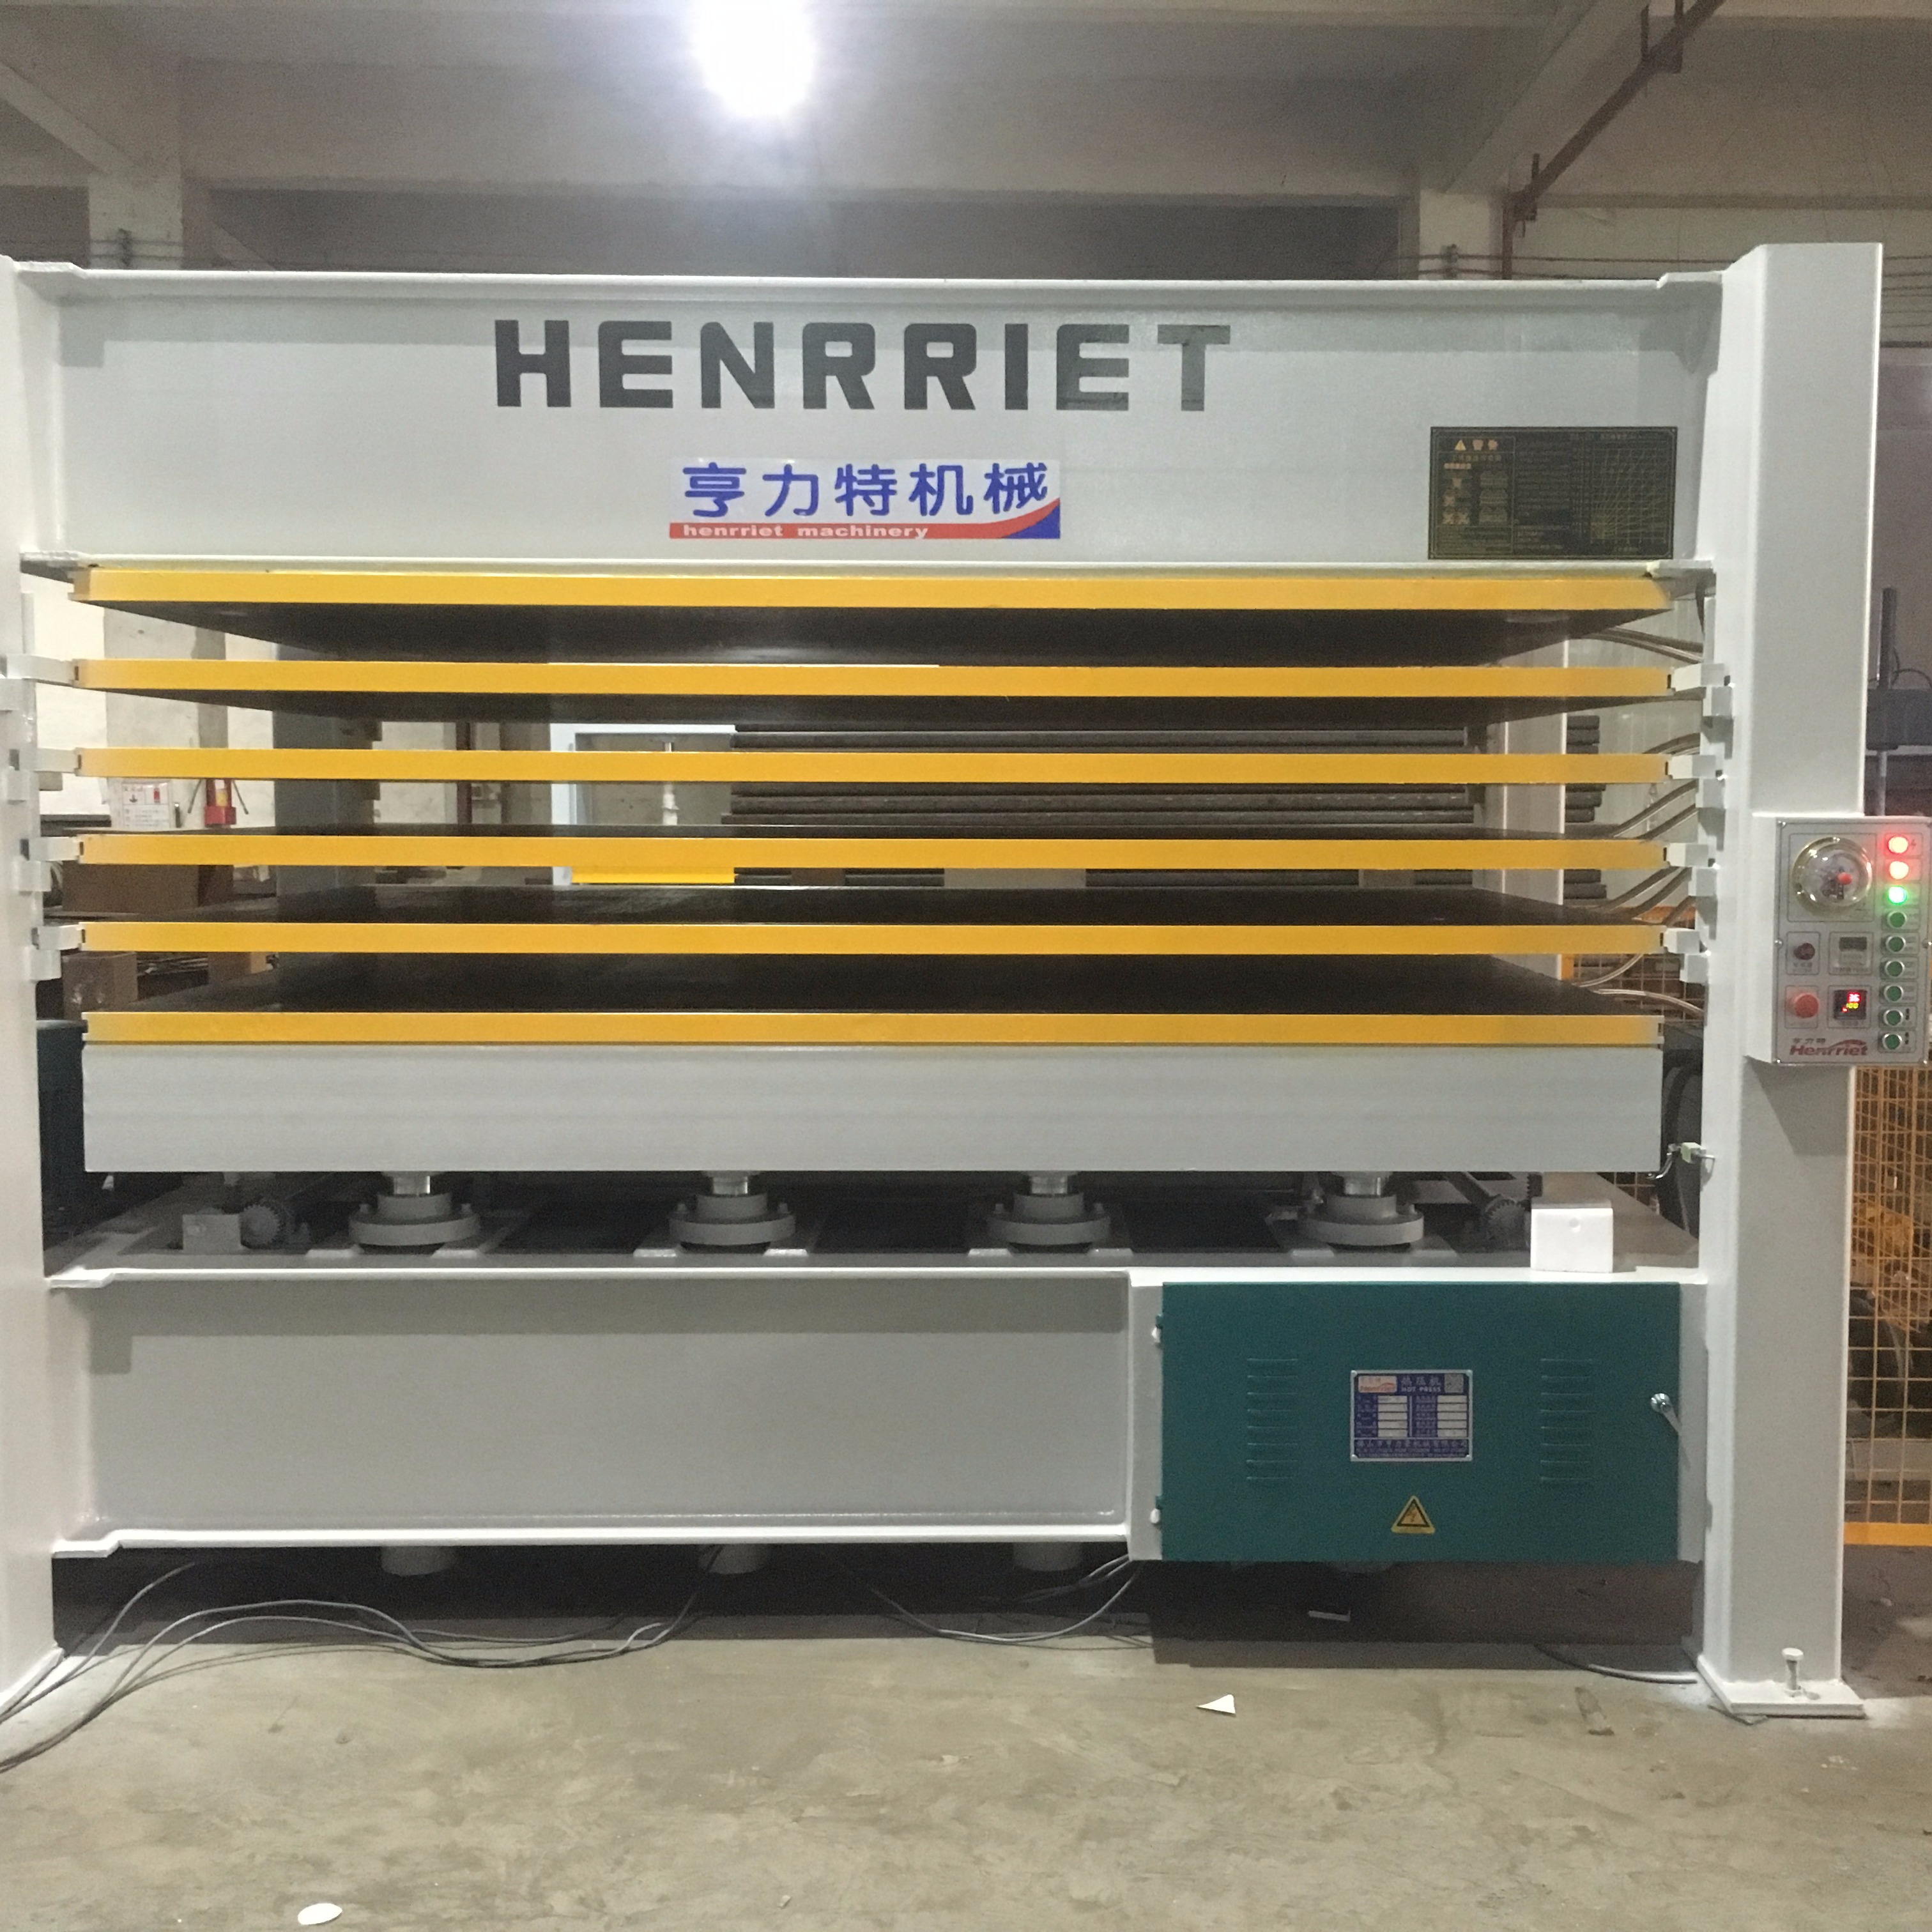 亨力特厂家专业生产批发江苏扬州热压机 1.7米x2.8米x120吨x5层铝蜂板热压机 自动压机